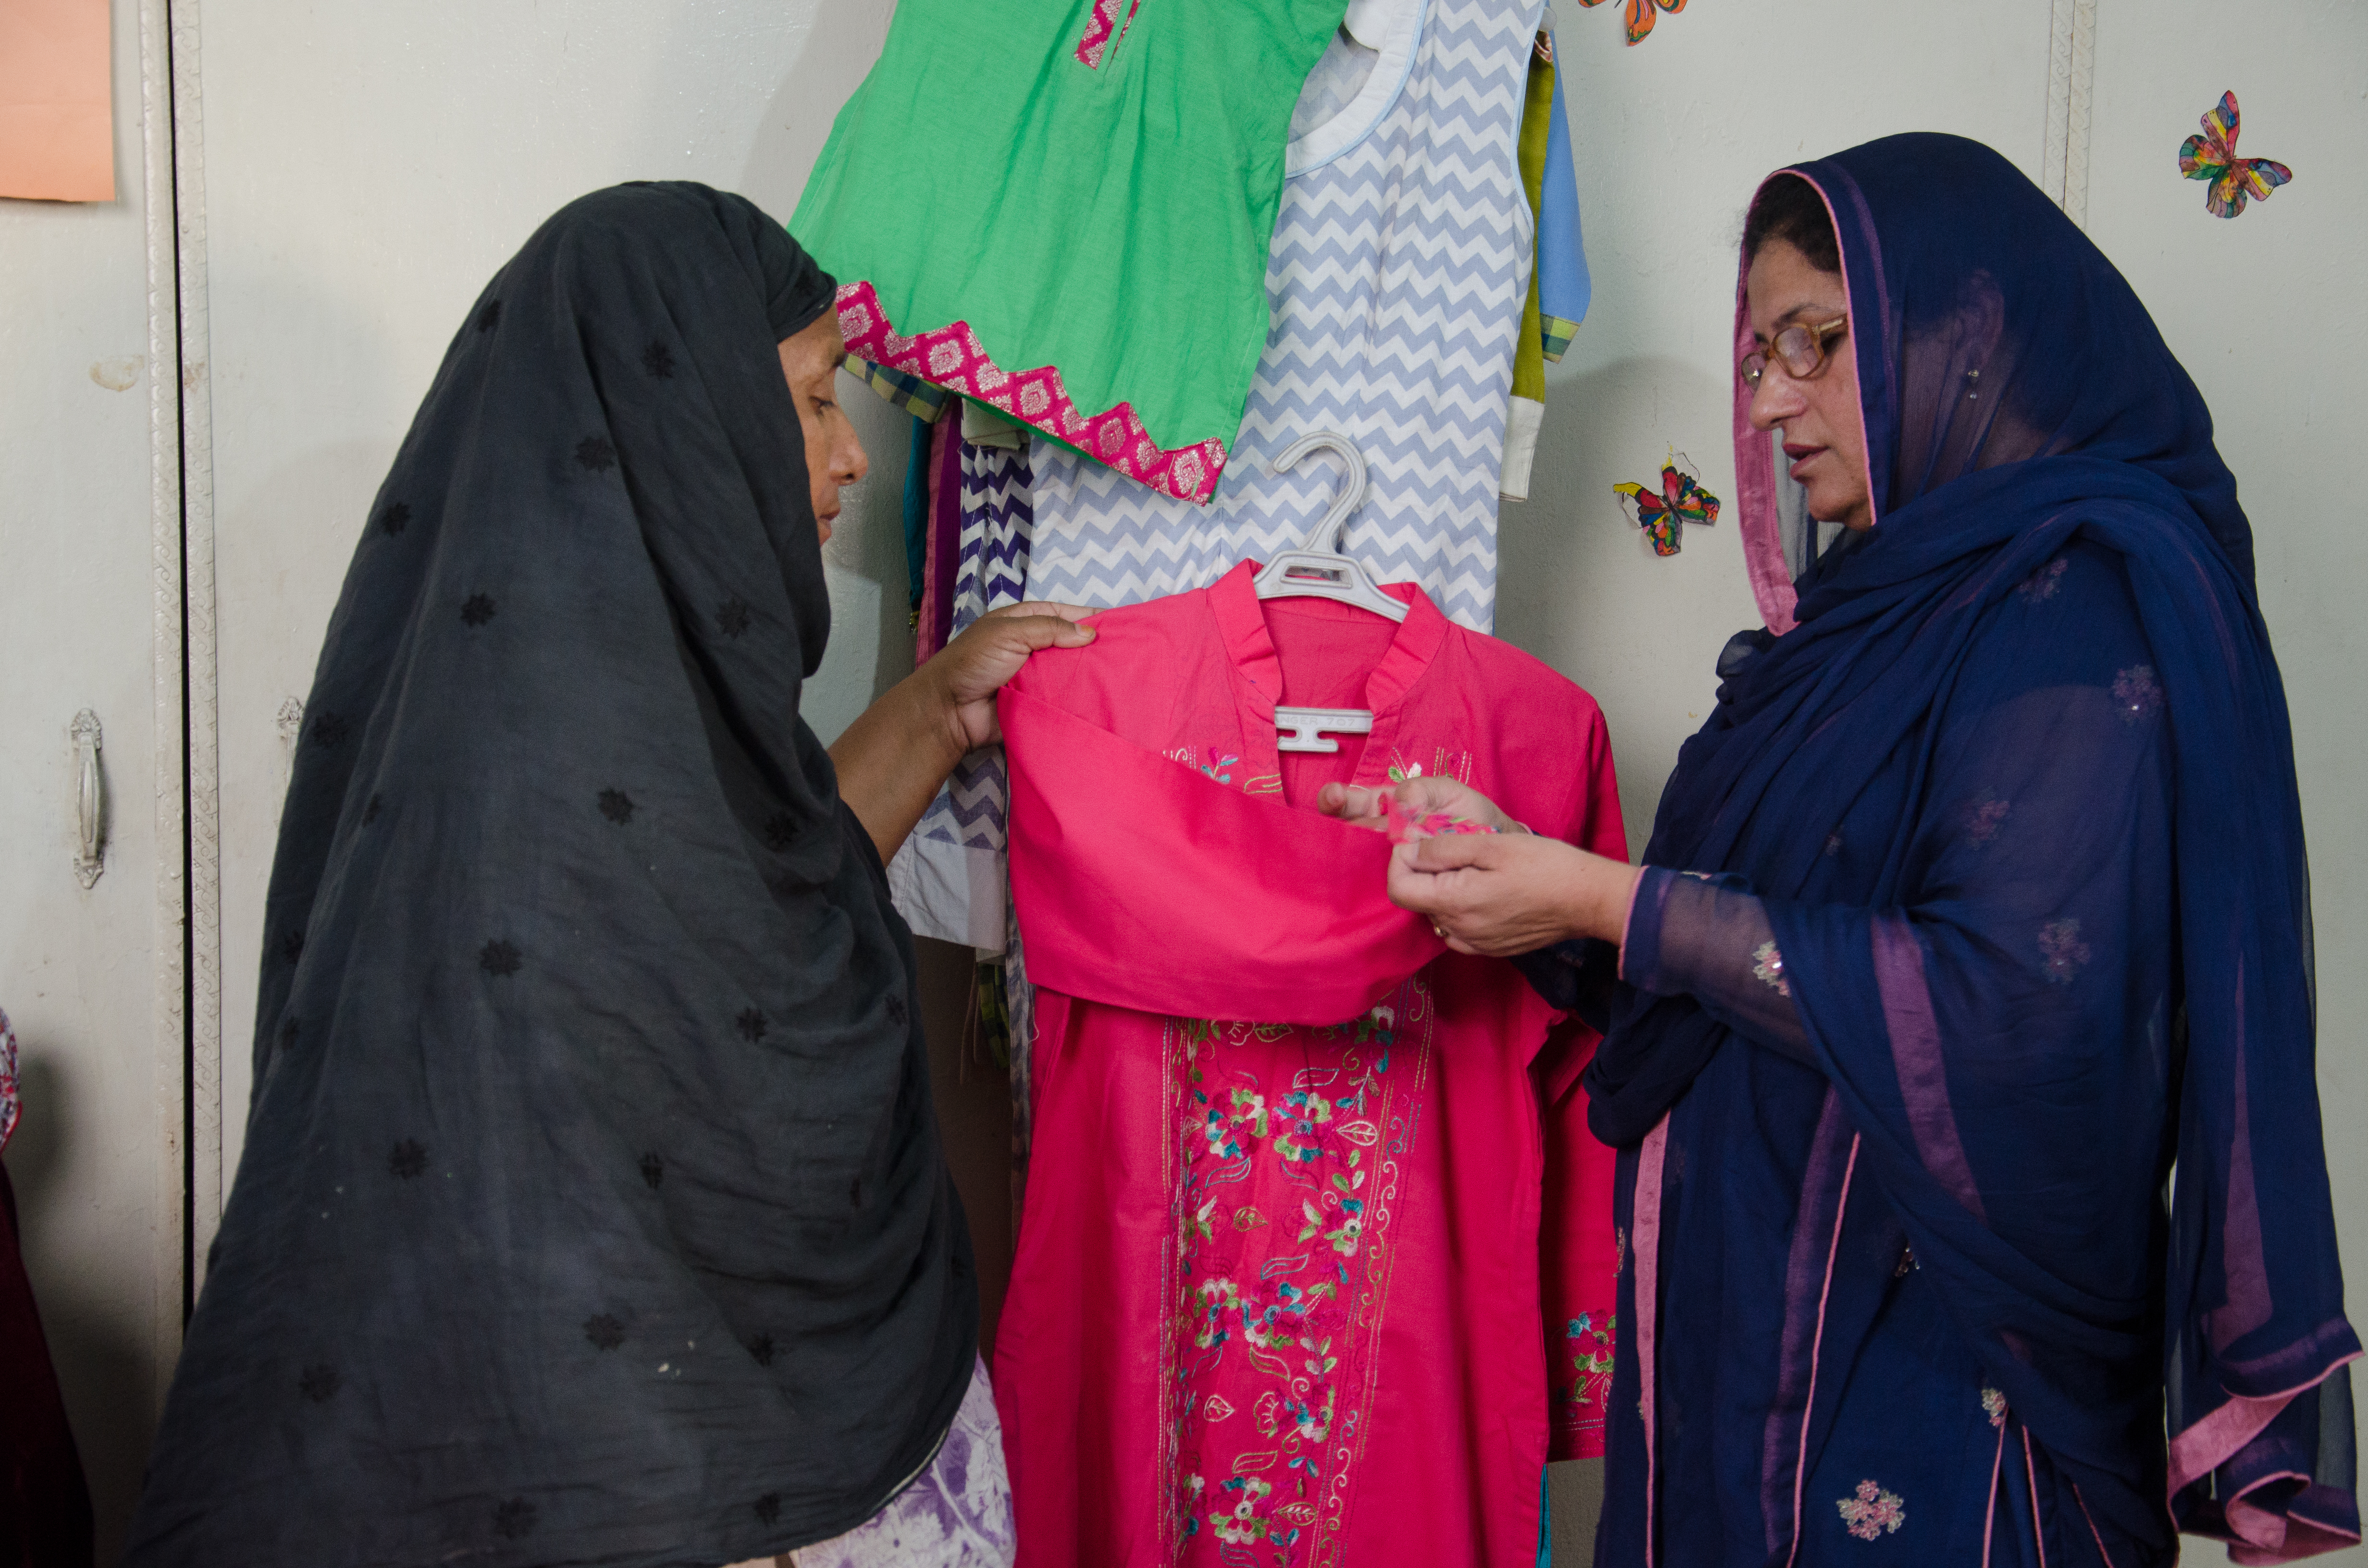 Tras la muerte de su marido, Saeeda Begum (derecha) abrió un negocio de ropa en Rawalpindi, India, para mantenerse a ella y a sus cuatro hijos, pero ni siquiera tenía una cuenta bancaria. Gracias a la formación en contabilidad y digitalización a través de CARE, la mayoría de sus desafíos ahora se resuelven con un solo clic, afirma. (Foto cortesía de CARE)